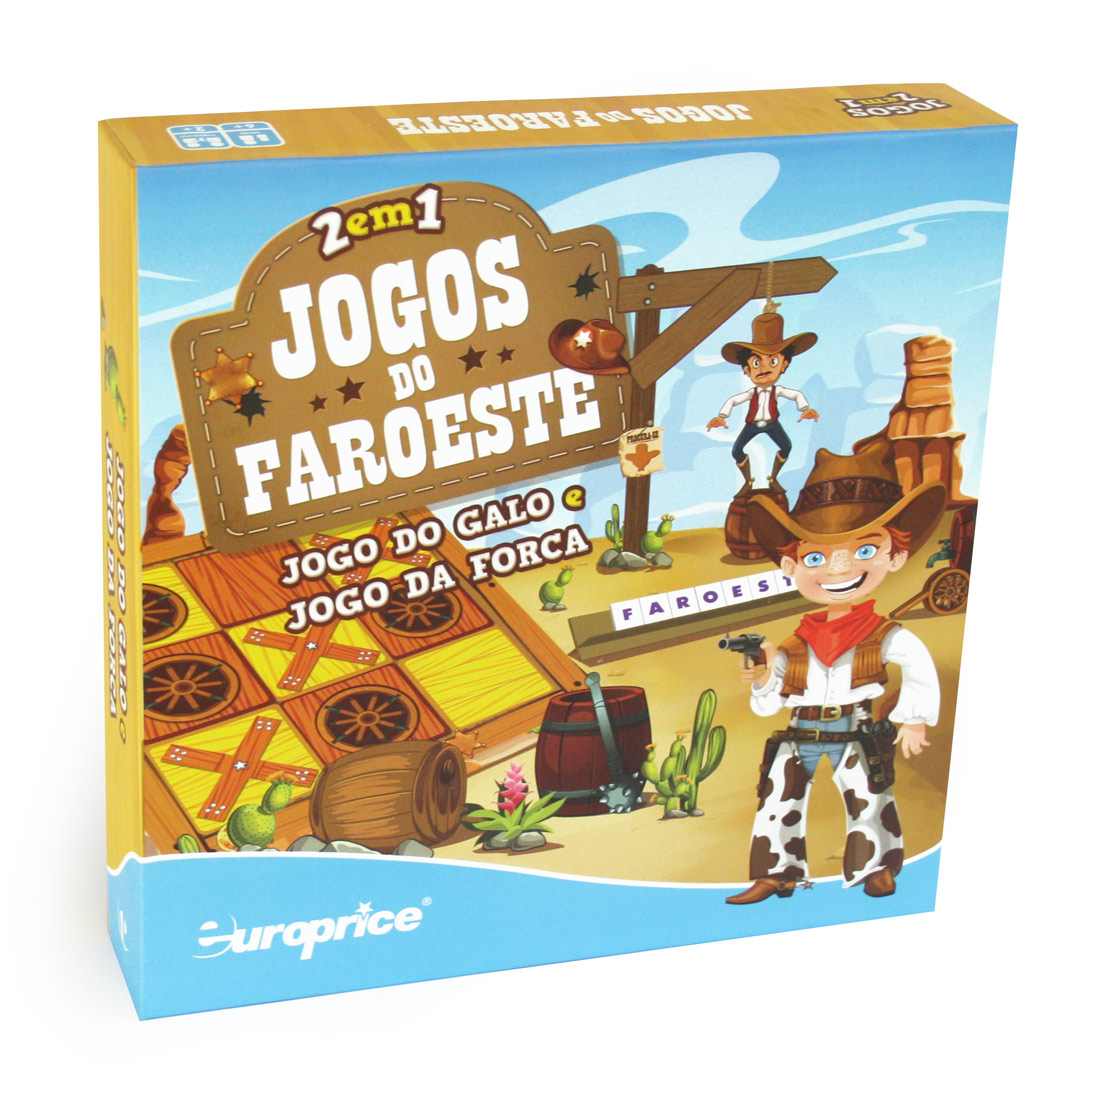 Imagem da caixa do jogo educativo Jogos do Faroeste - Jogo do Galo e Jogo da Forca.